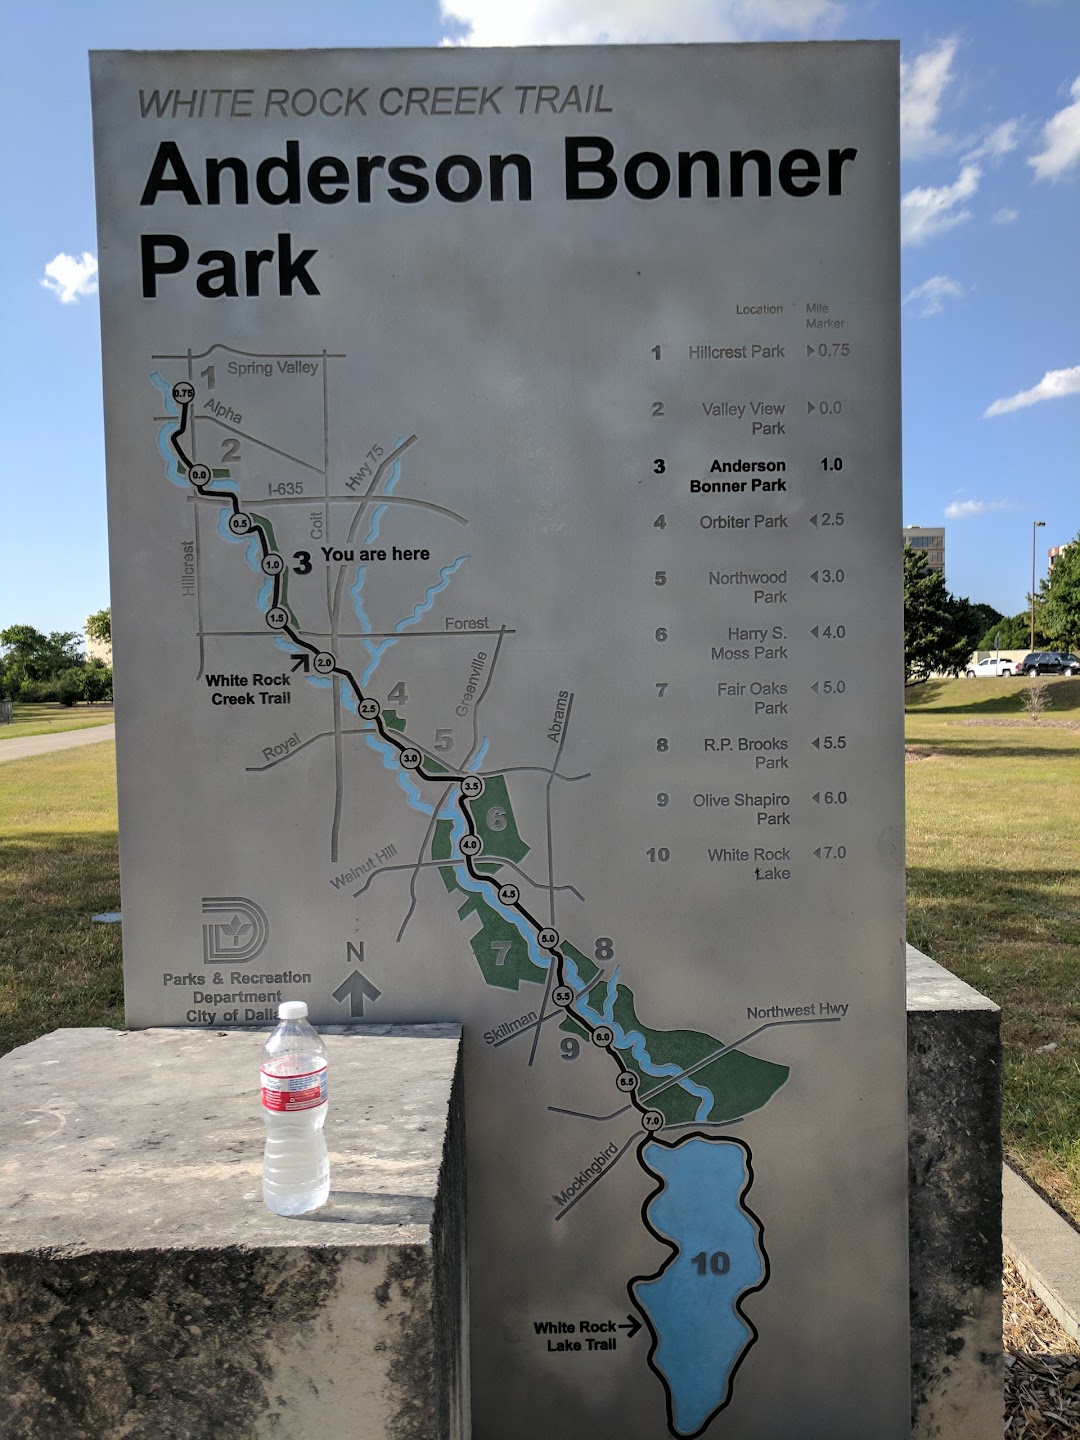 Anderson Bonner Park